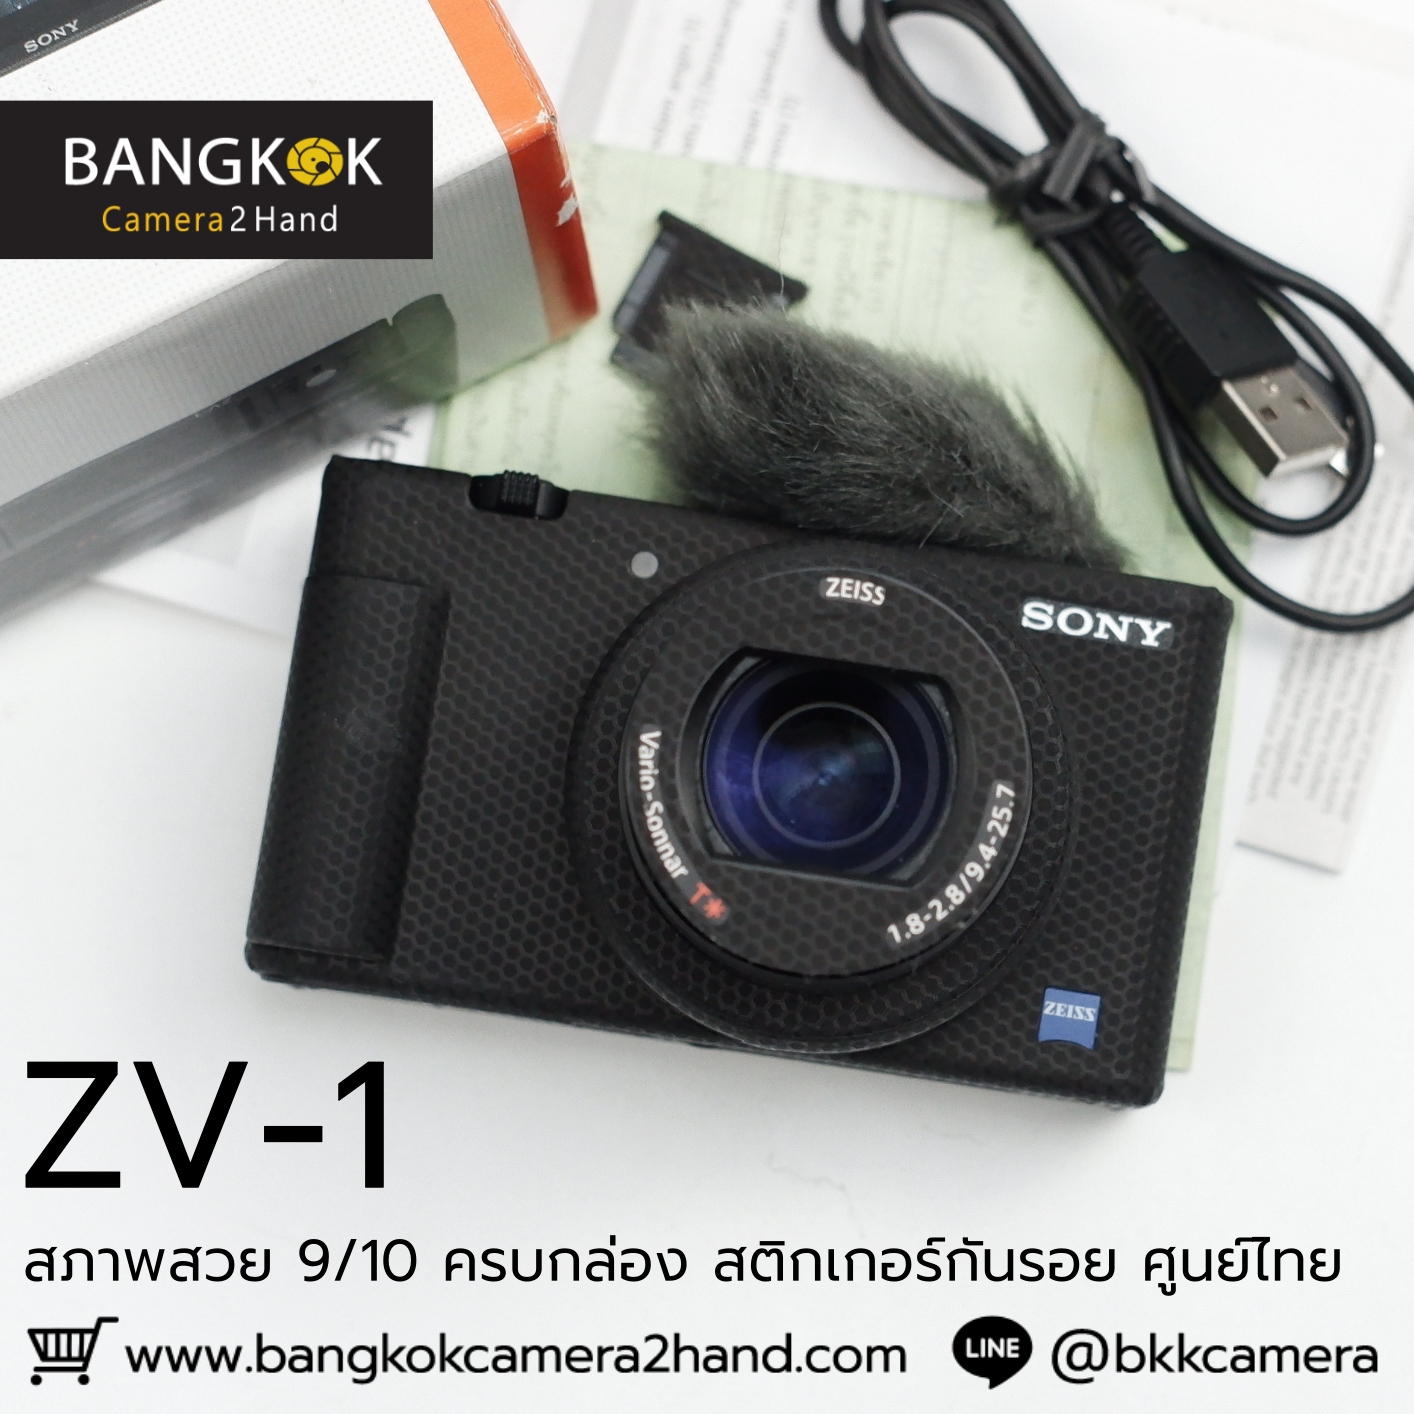 Sony ZV-1 กล้องคอมแพค ศูนย์ไทย